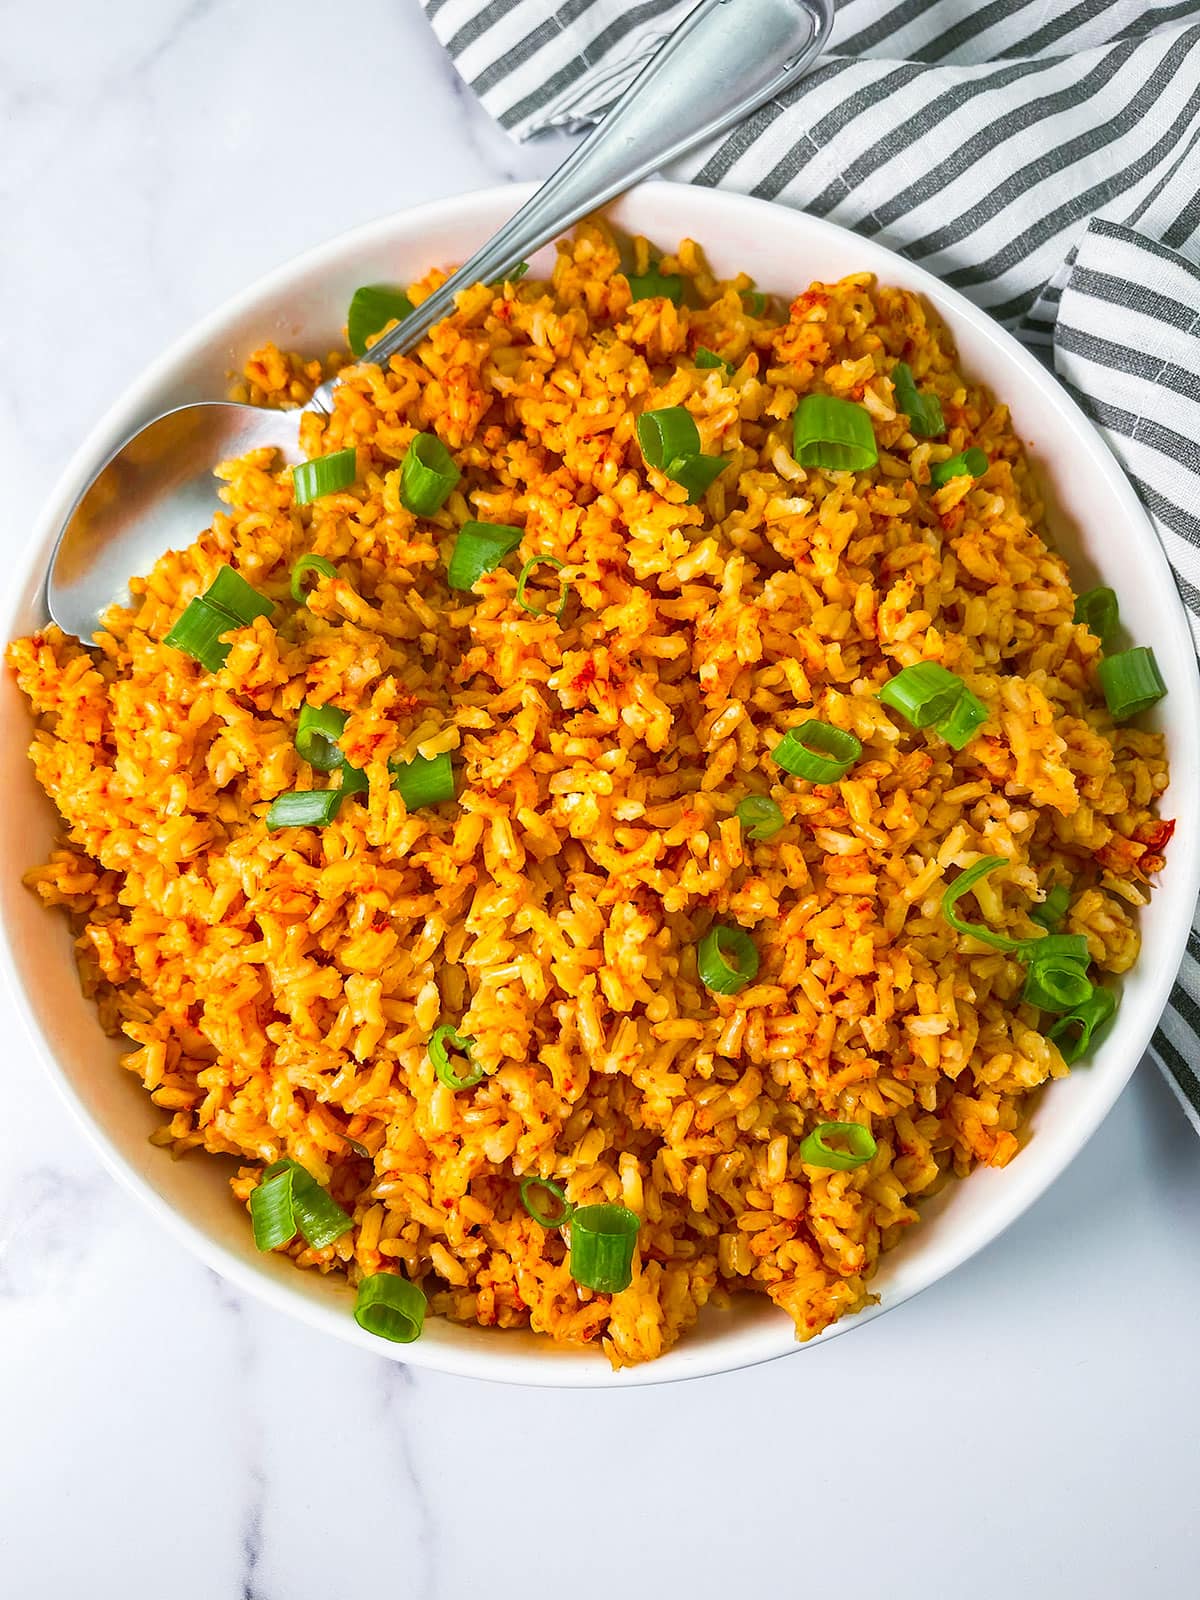 Best Jollof Rice Recipe - How To Make Jollof Rice